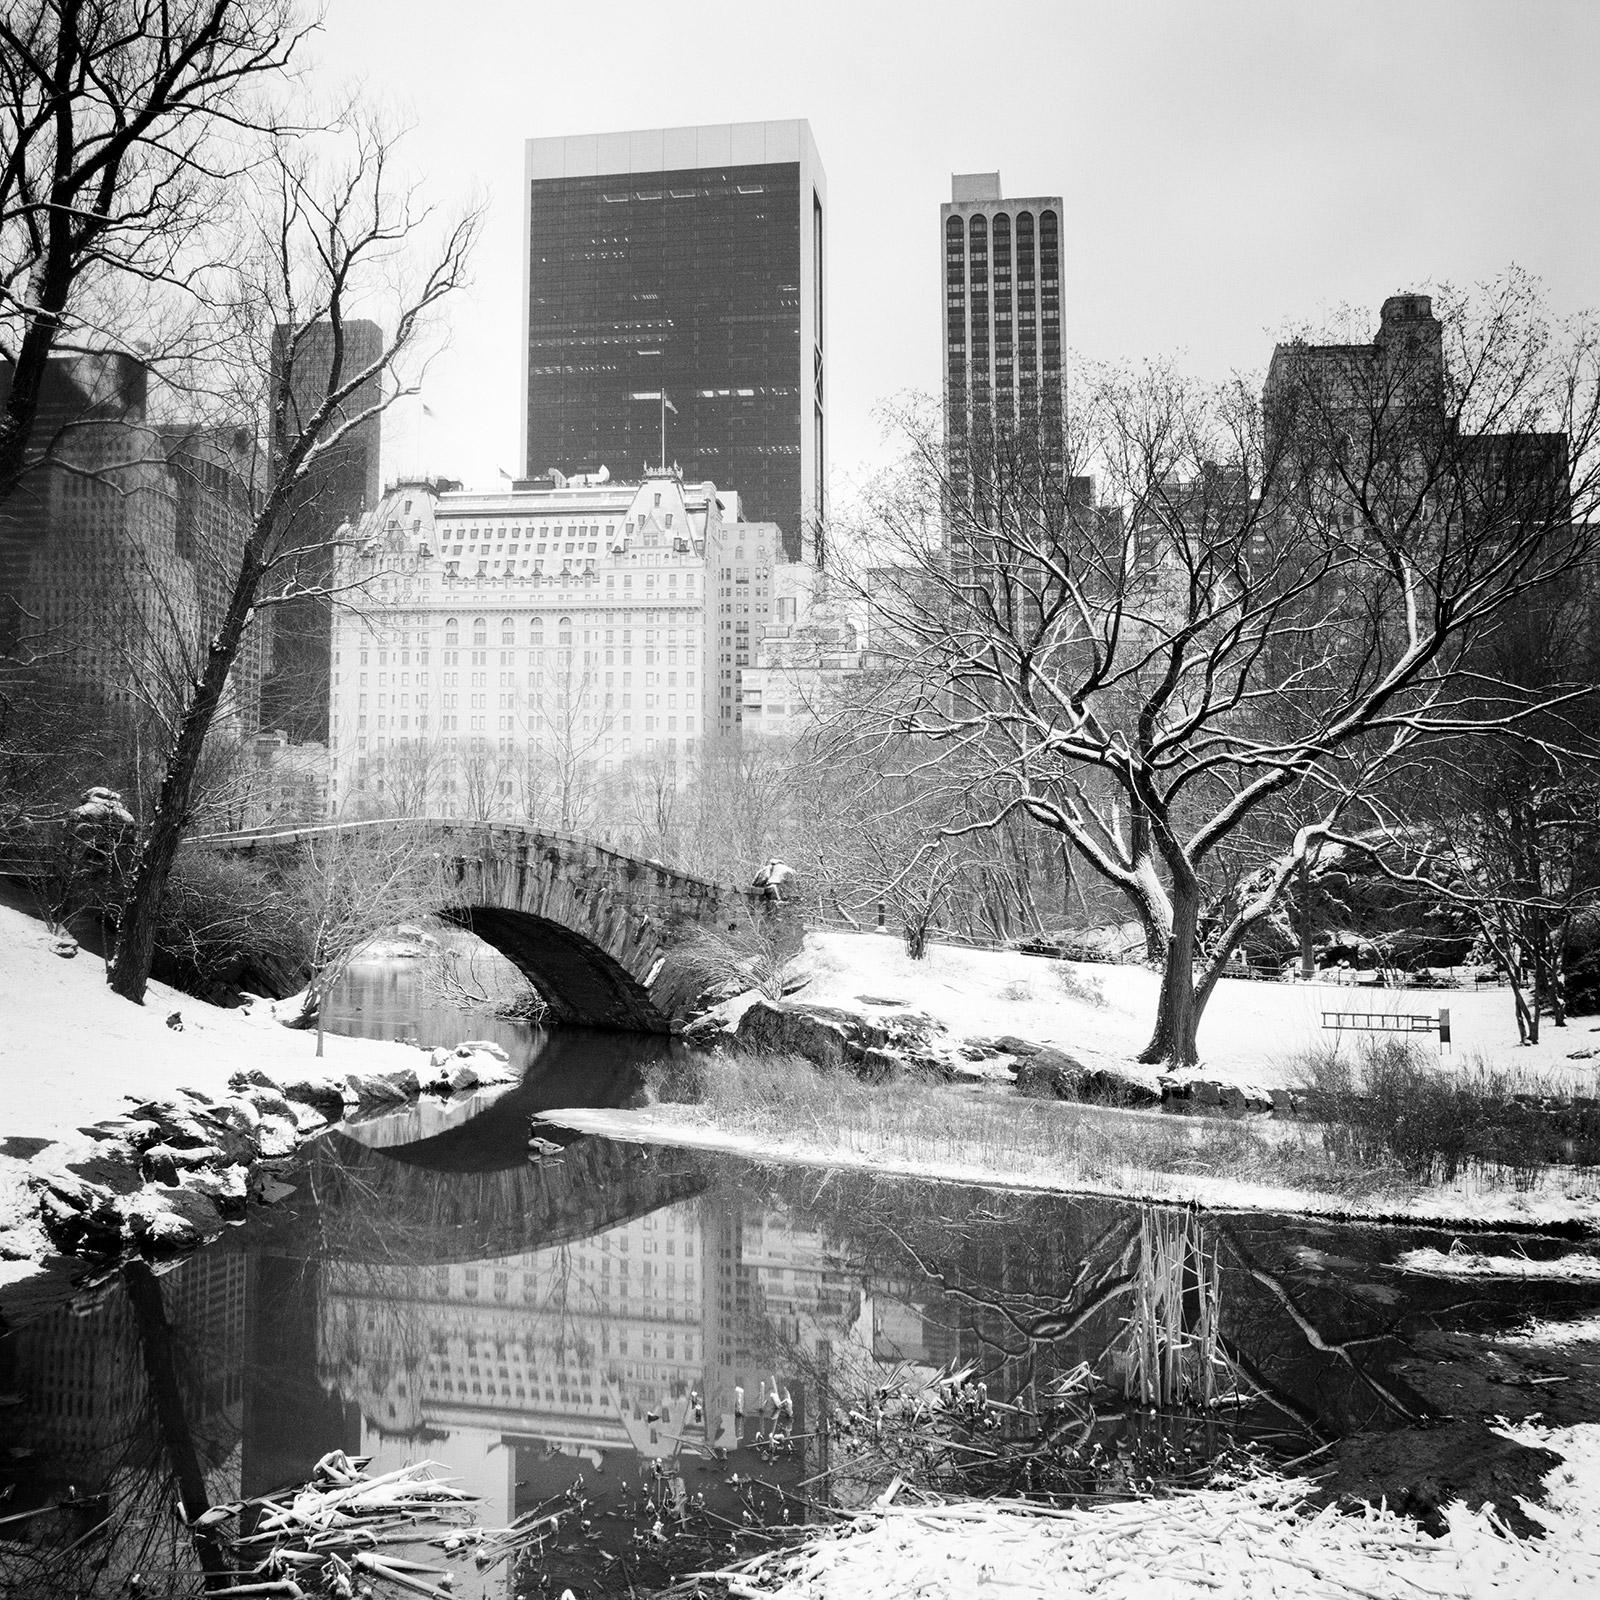 Paysages photographiques en noir et blanc recouverts de neige de Central Park, New York